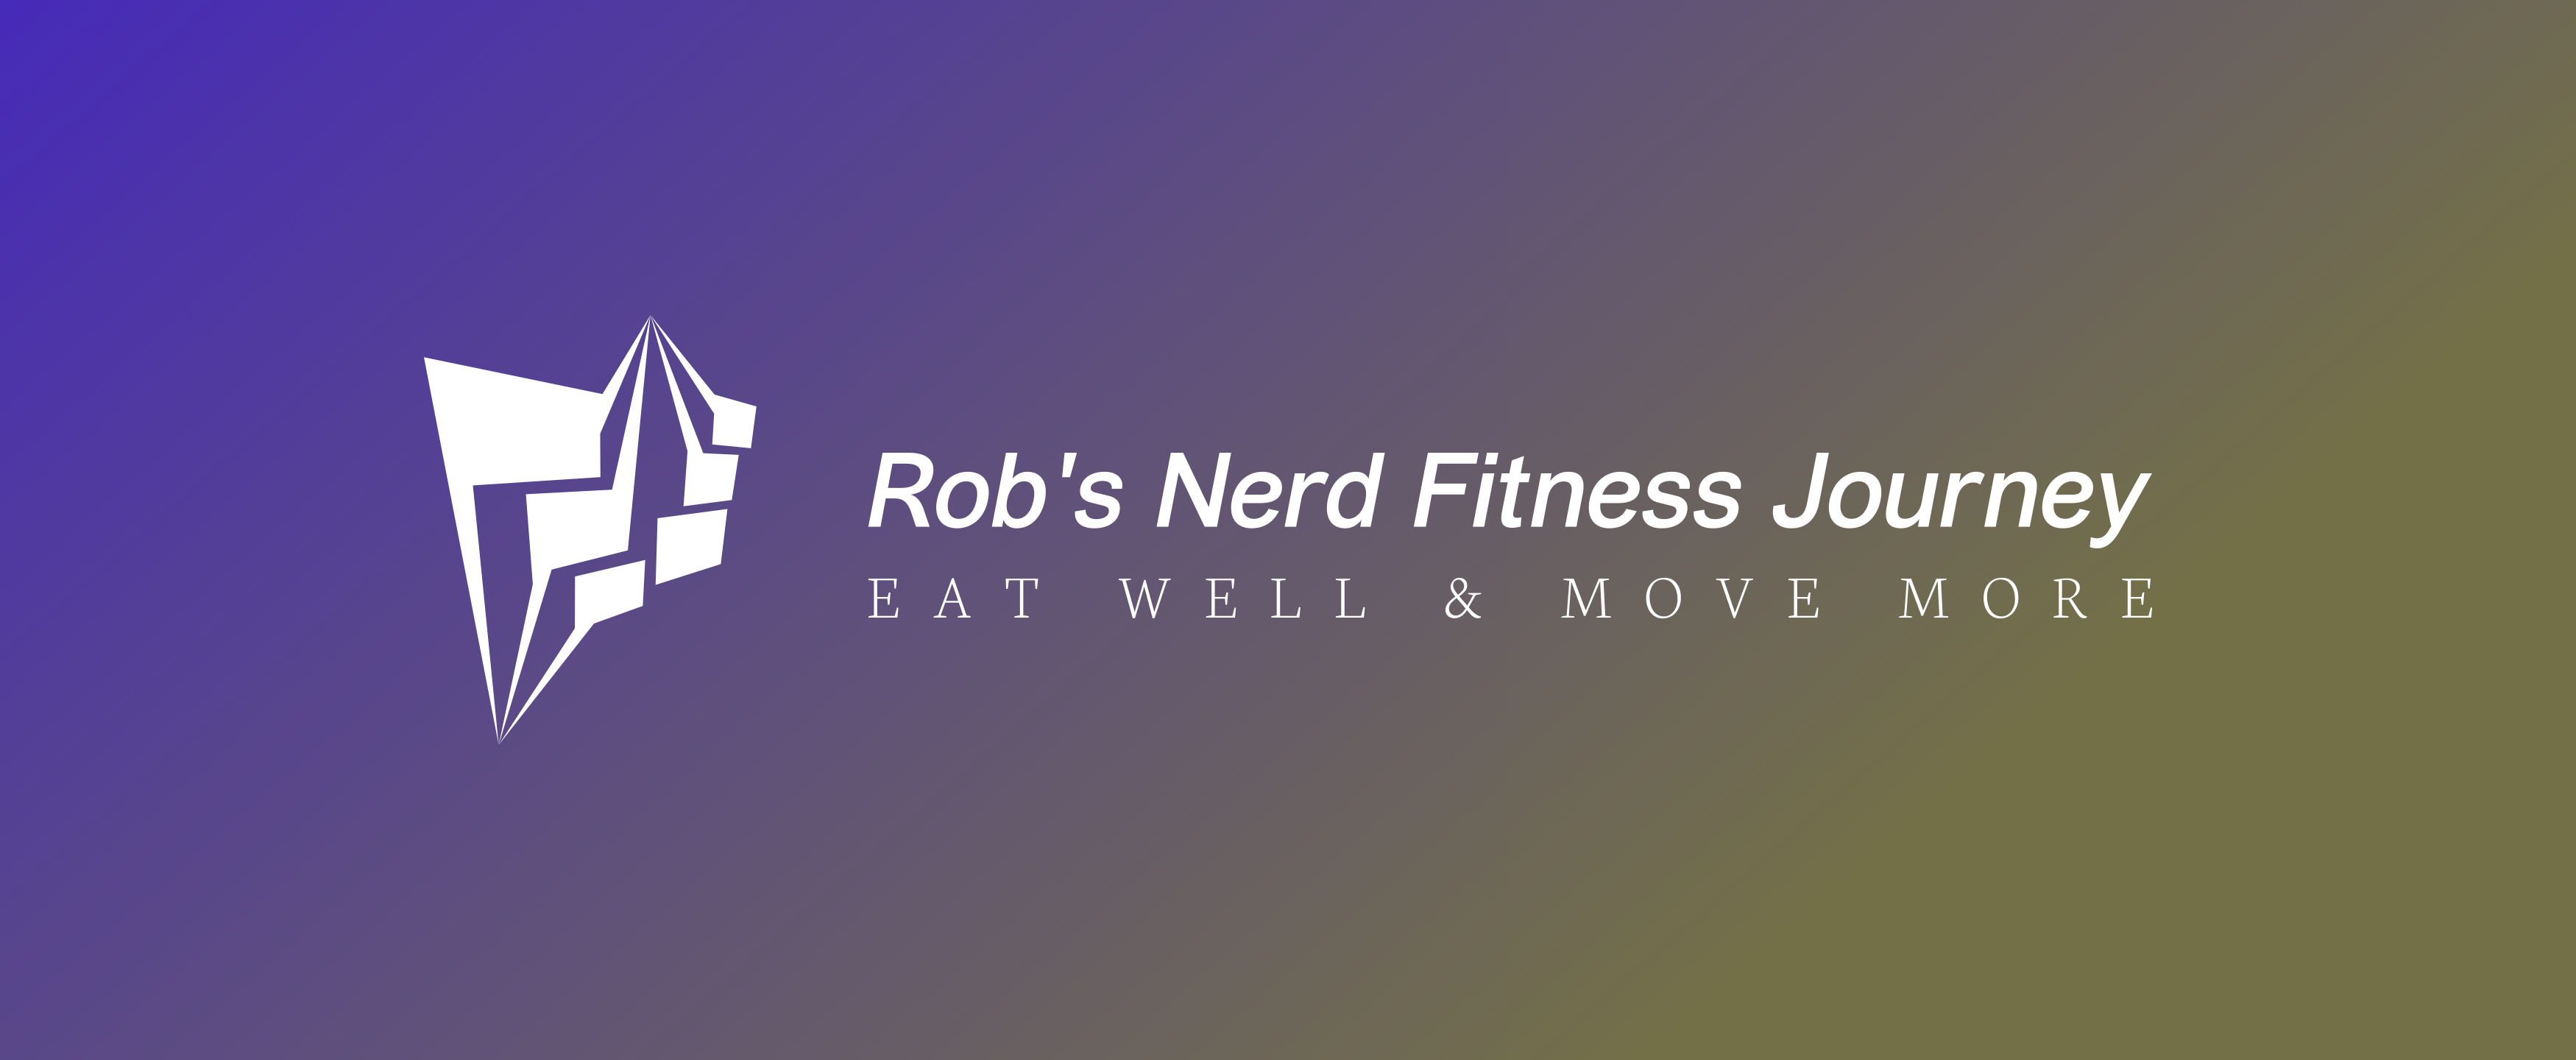 Rob's Nerd Fitness Journey